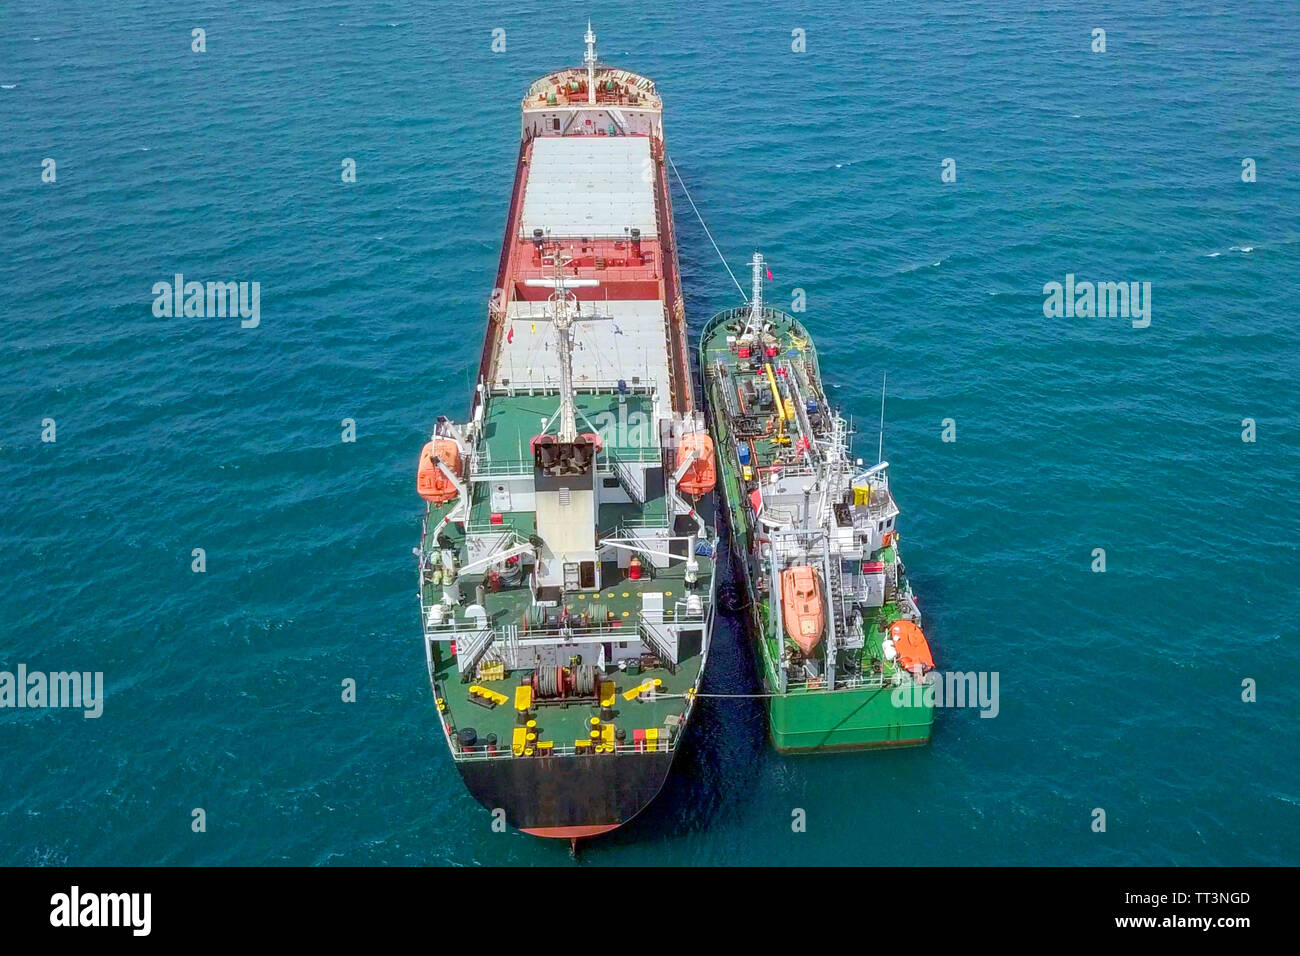 Le ravitaillement en mer - petits produits d'huile alimentant un grand navire vraquier, de l'image aérienne. Banque D'Images